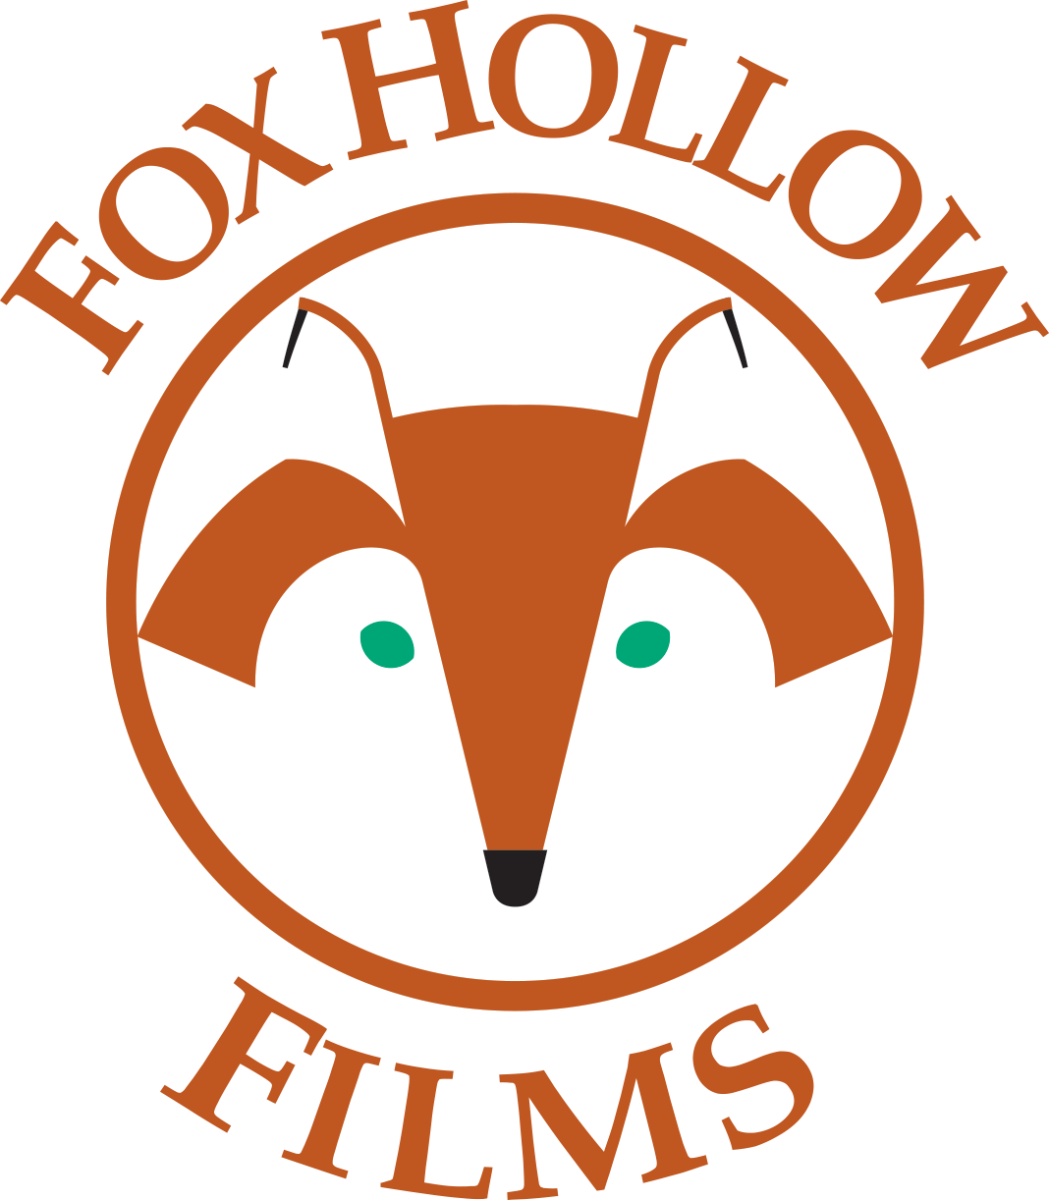 Fox Hollow Films logo, c/o James D. Le Sueur